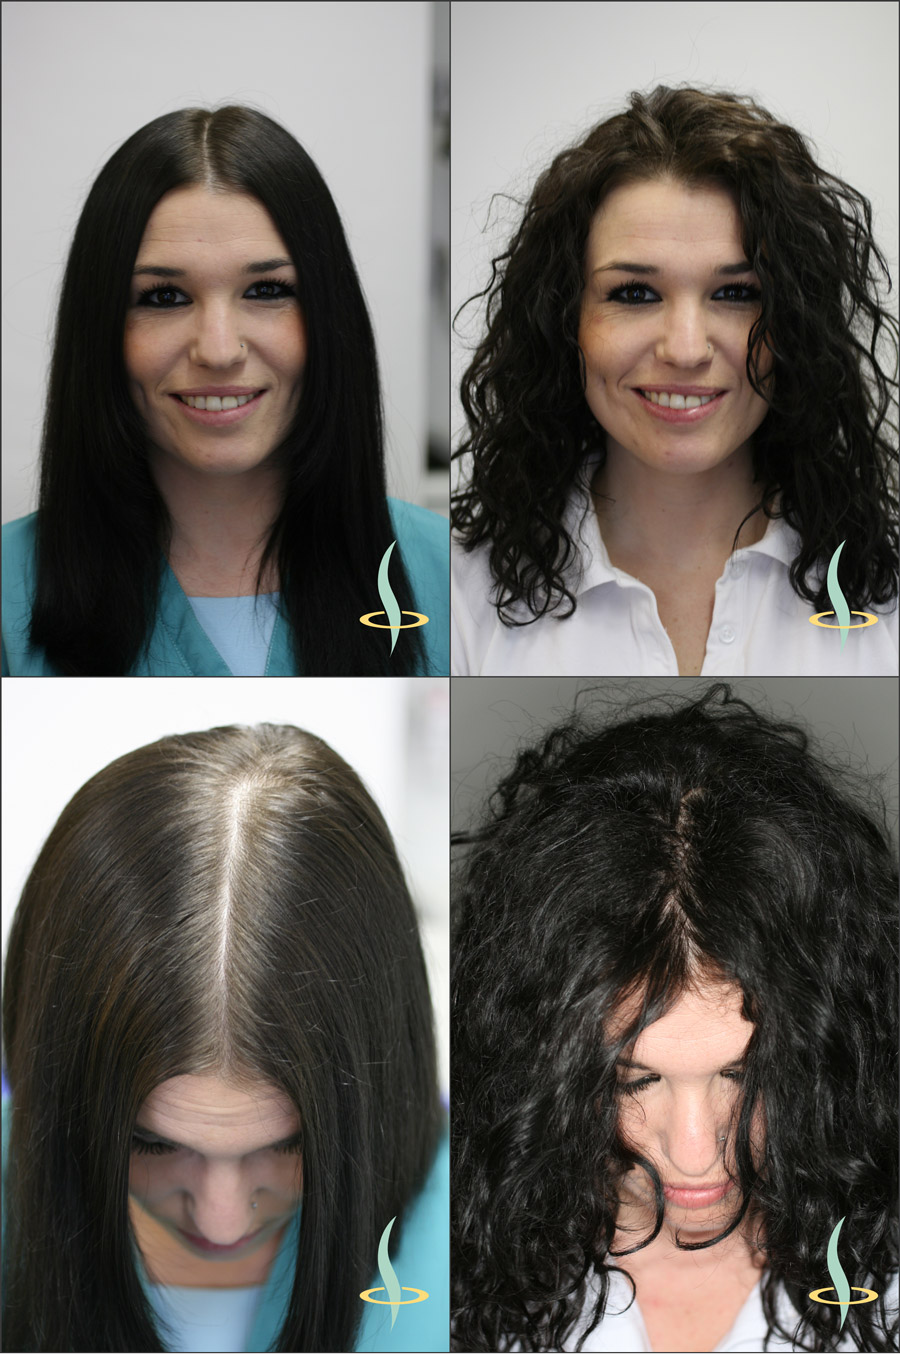 Рисунок 2: Оптический эффект видимости кожи головы при прямом (слева) и волнистом (справа) волосе.